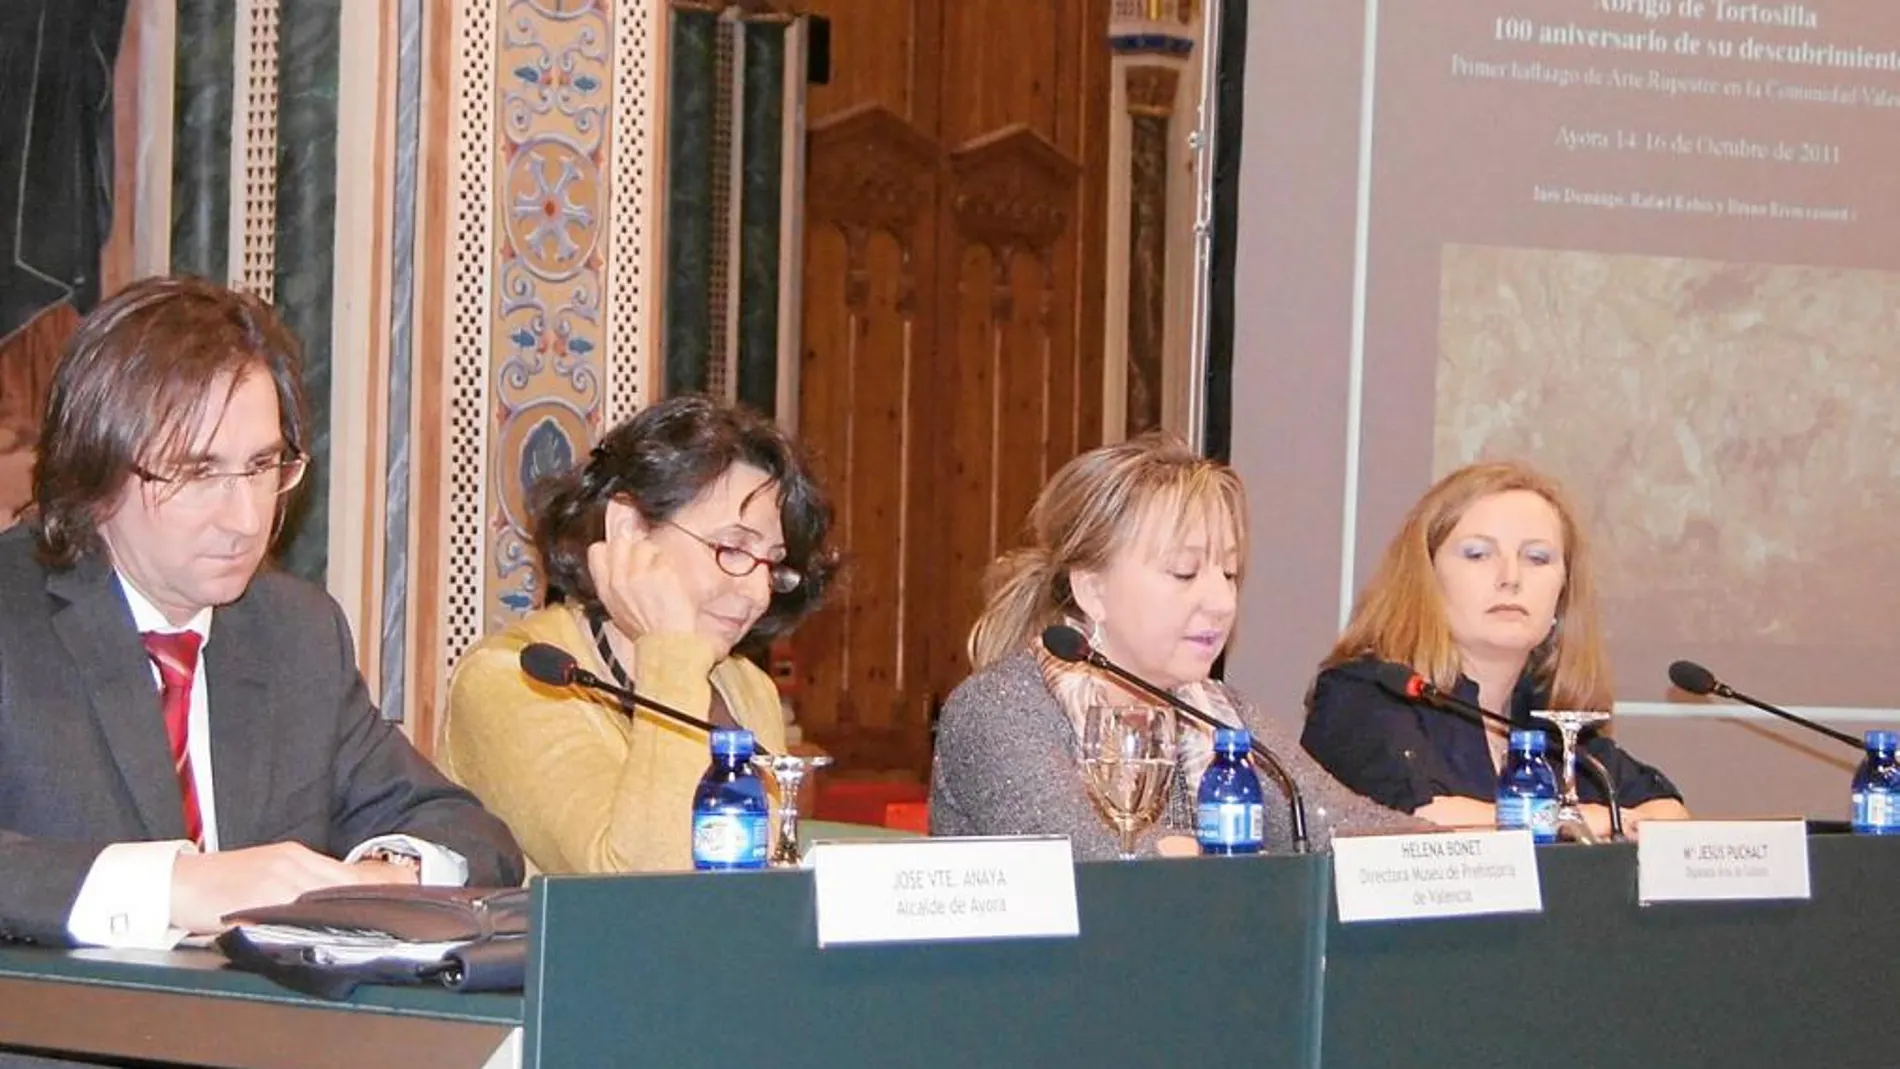 La diputada provincial de Cultura, María Jesús Puchalt, en la presentación del libro sobre el centenario del Abrigo de Tortosillas